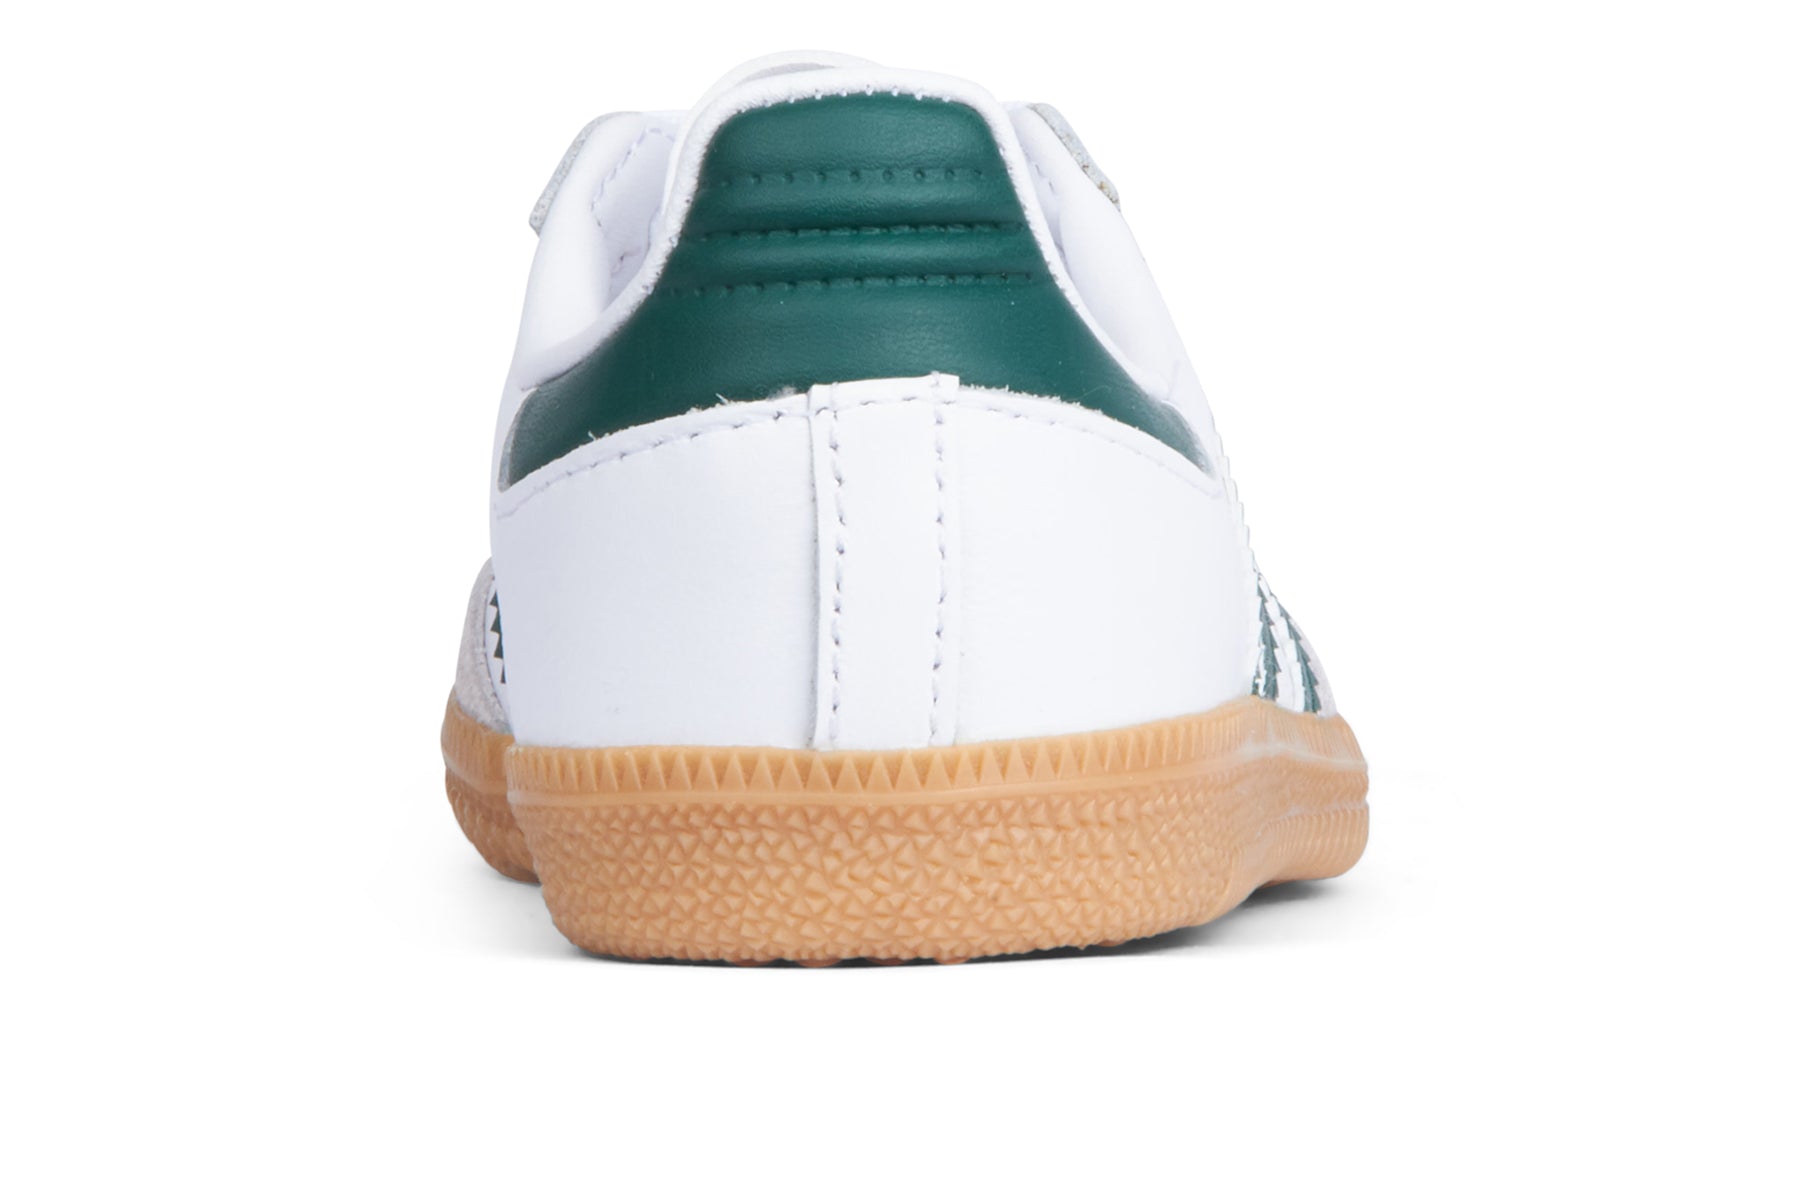 Adidas Samba OG C (Kids) - FTWR White/Core Green/Gum